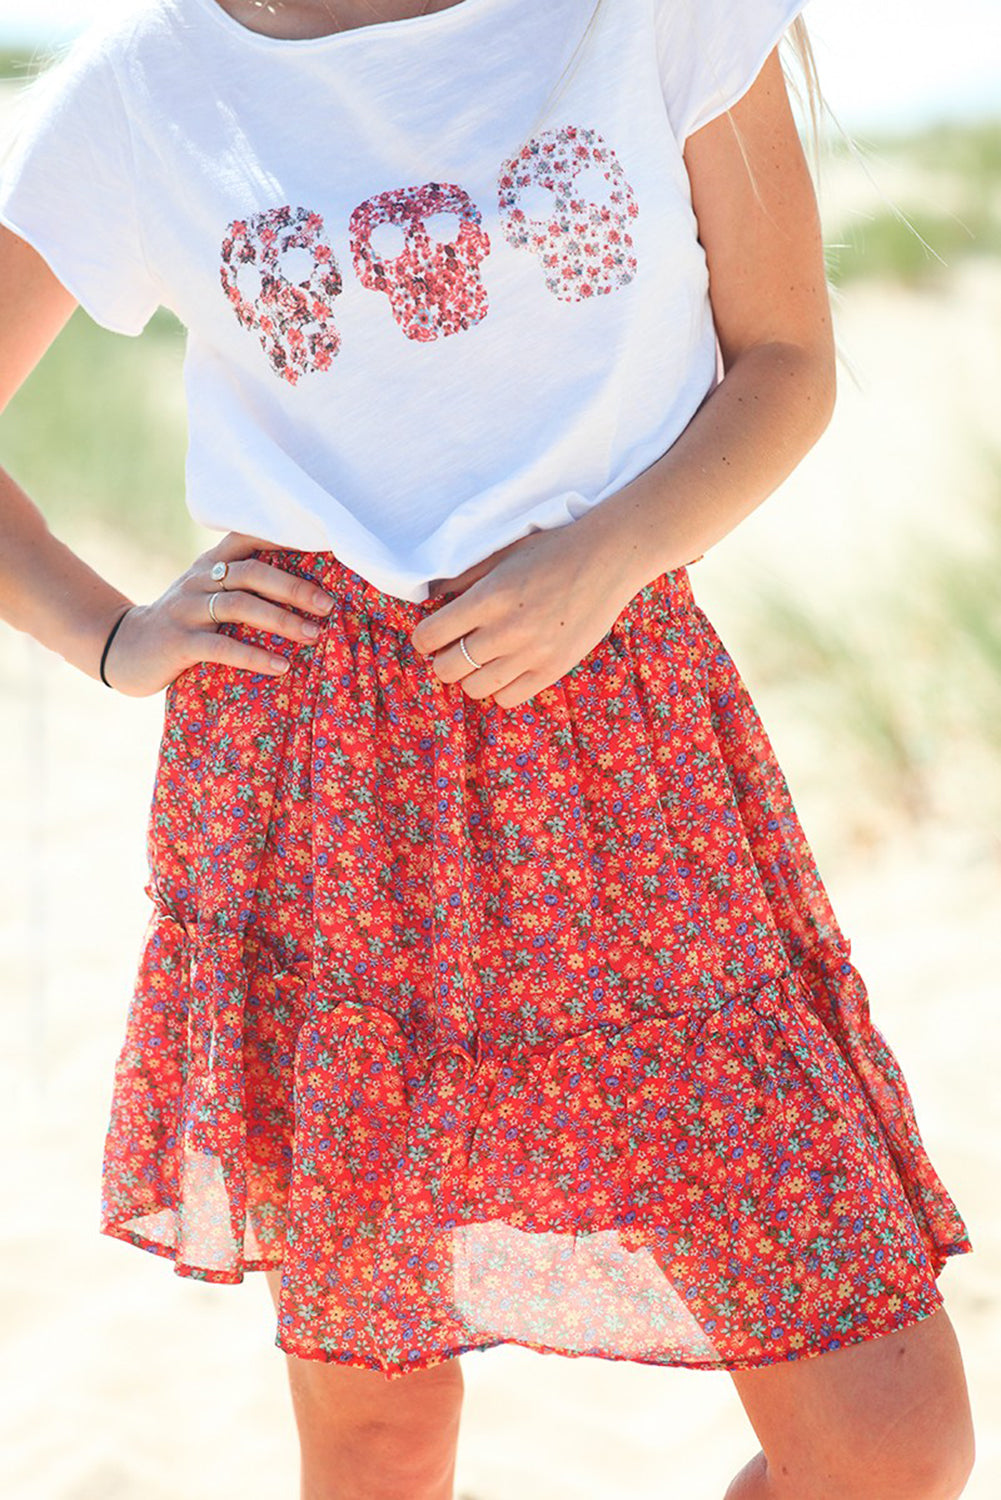 Floral Print Elastic Waist Skirt